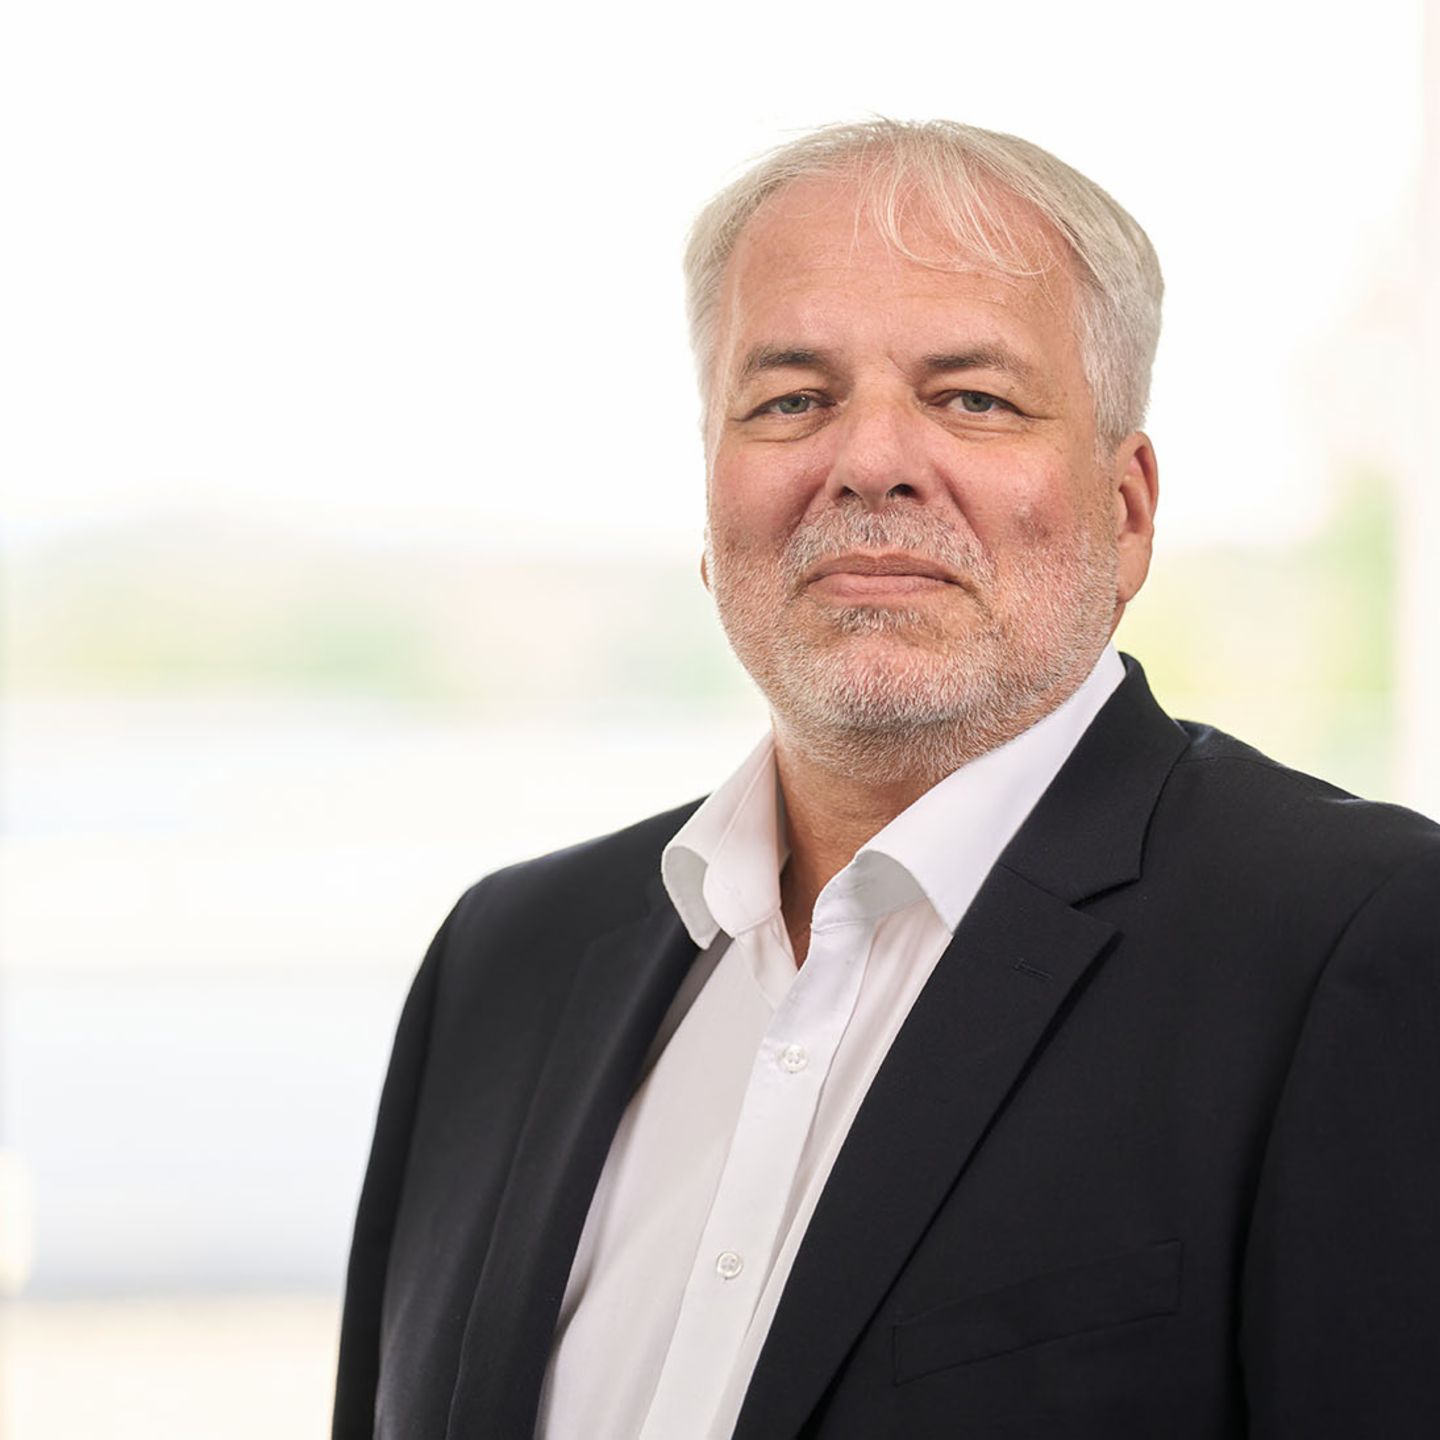 Stephn Spieckermann ist der Geschäftsführer der EOS Deutschland GmbH, B2B Geschäftsbereich